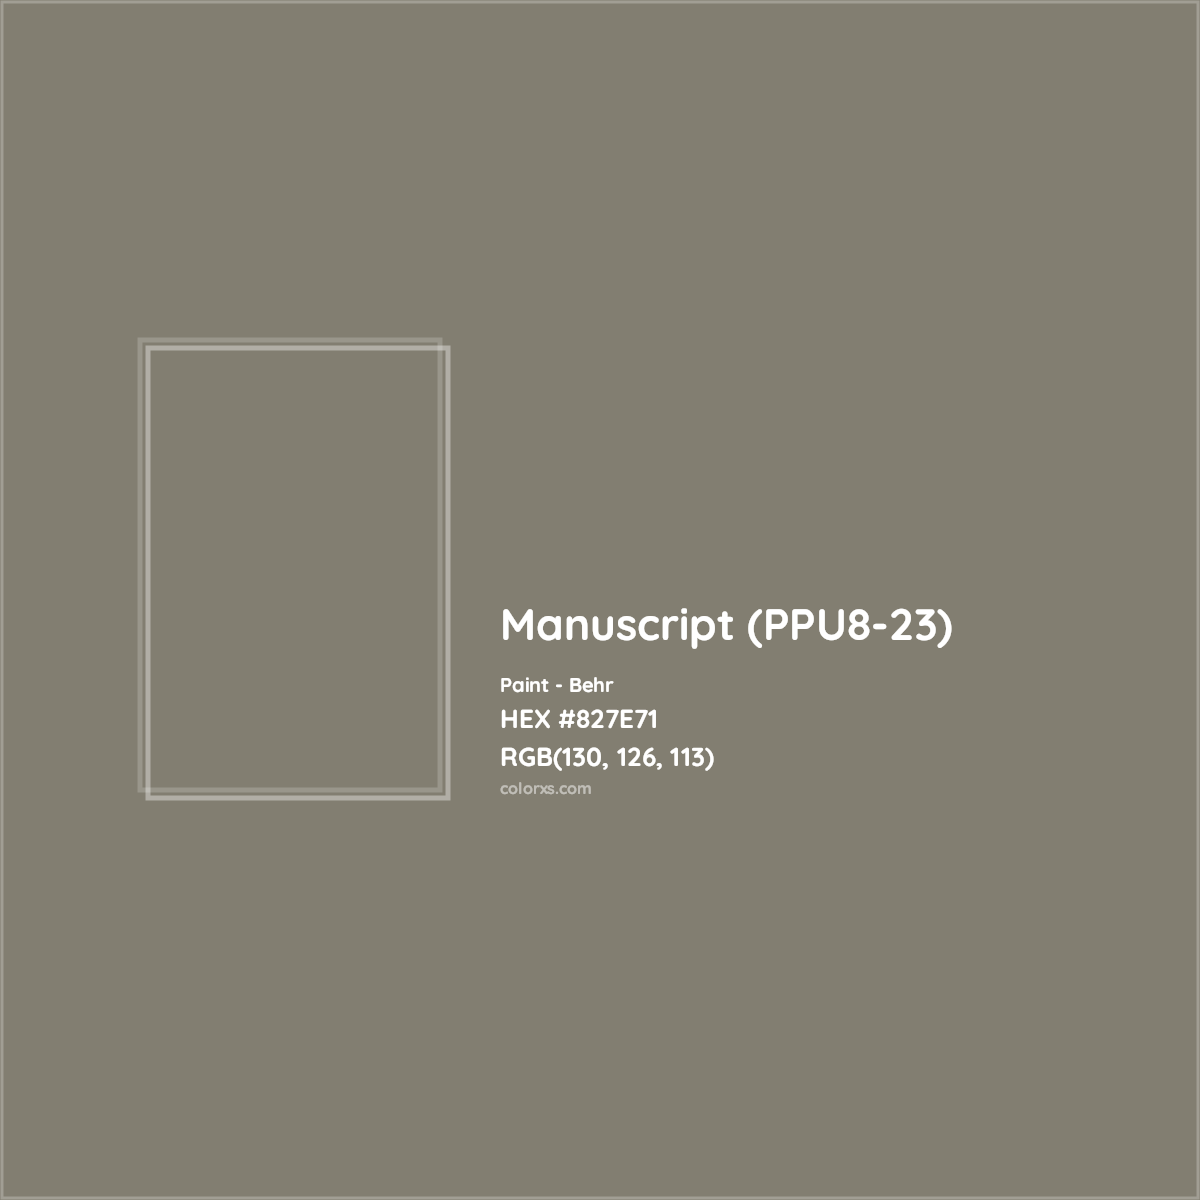 HEX #827E71 Manuscript (PPU8-23) Paint Behr - Color Code